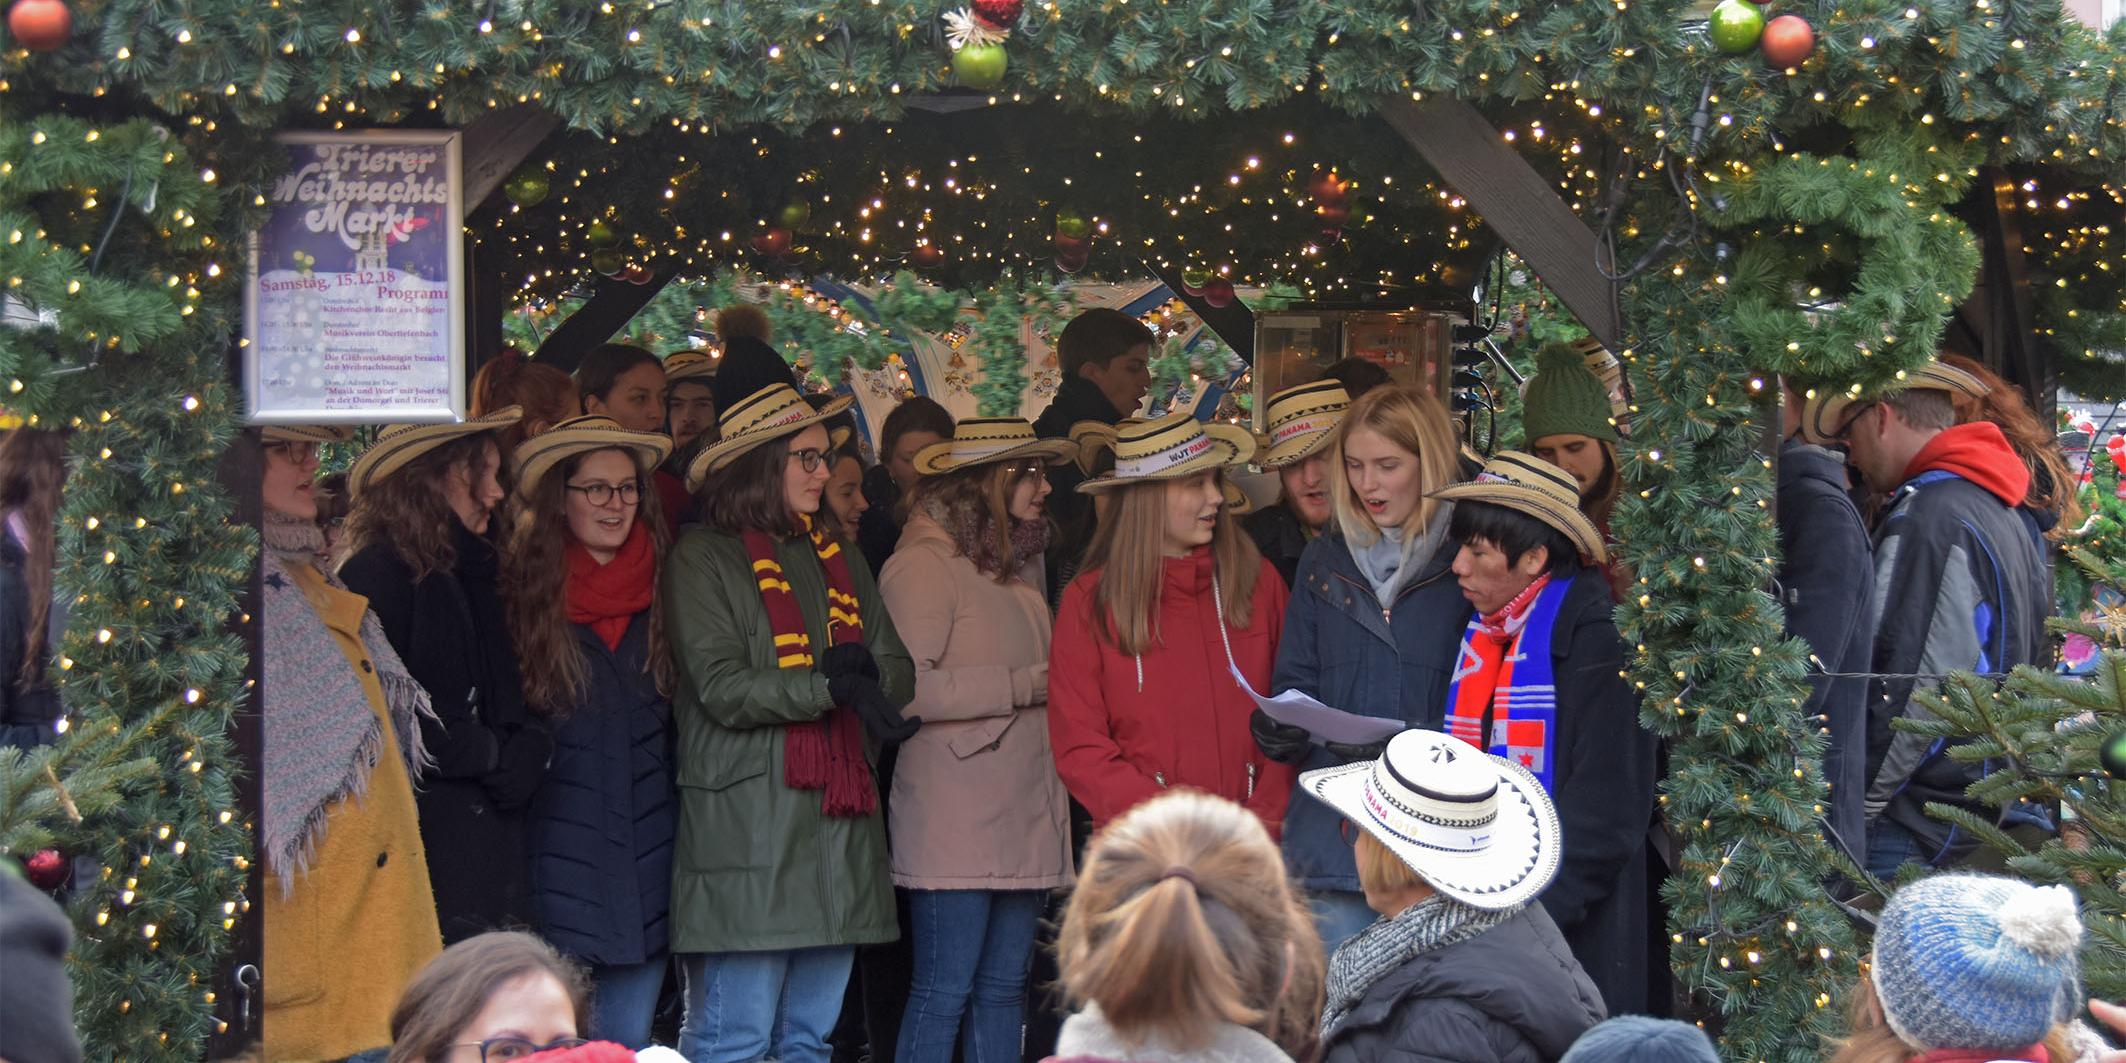 Auf dem Weihnachtsmarkt in Trier sangen die Jugendlichen die Hymne zum Weltjugendtag, um Spenden für Adveniat zu sammeln.